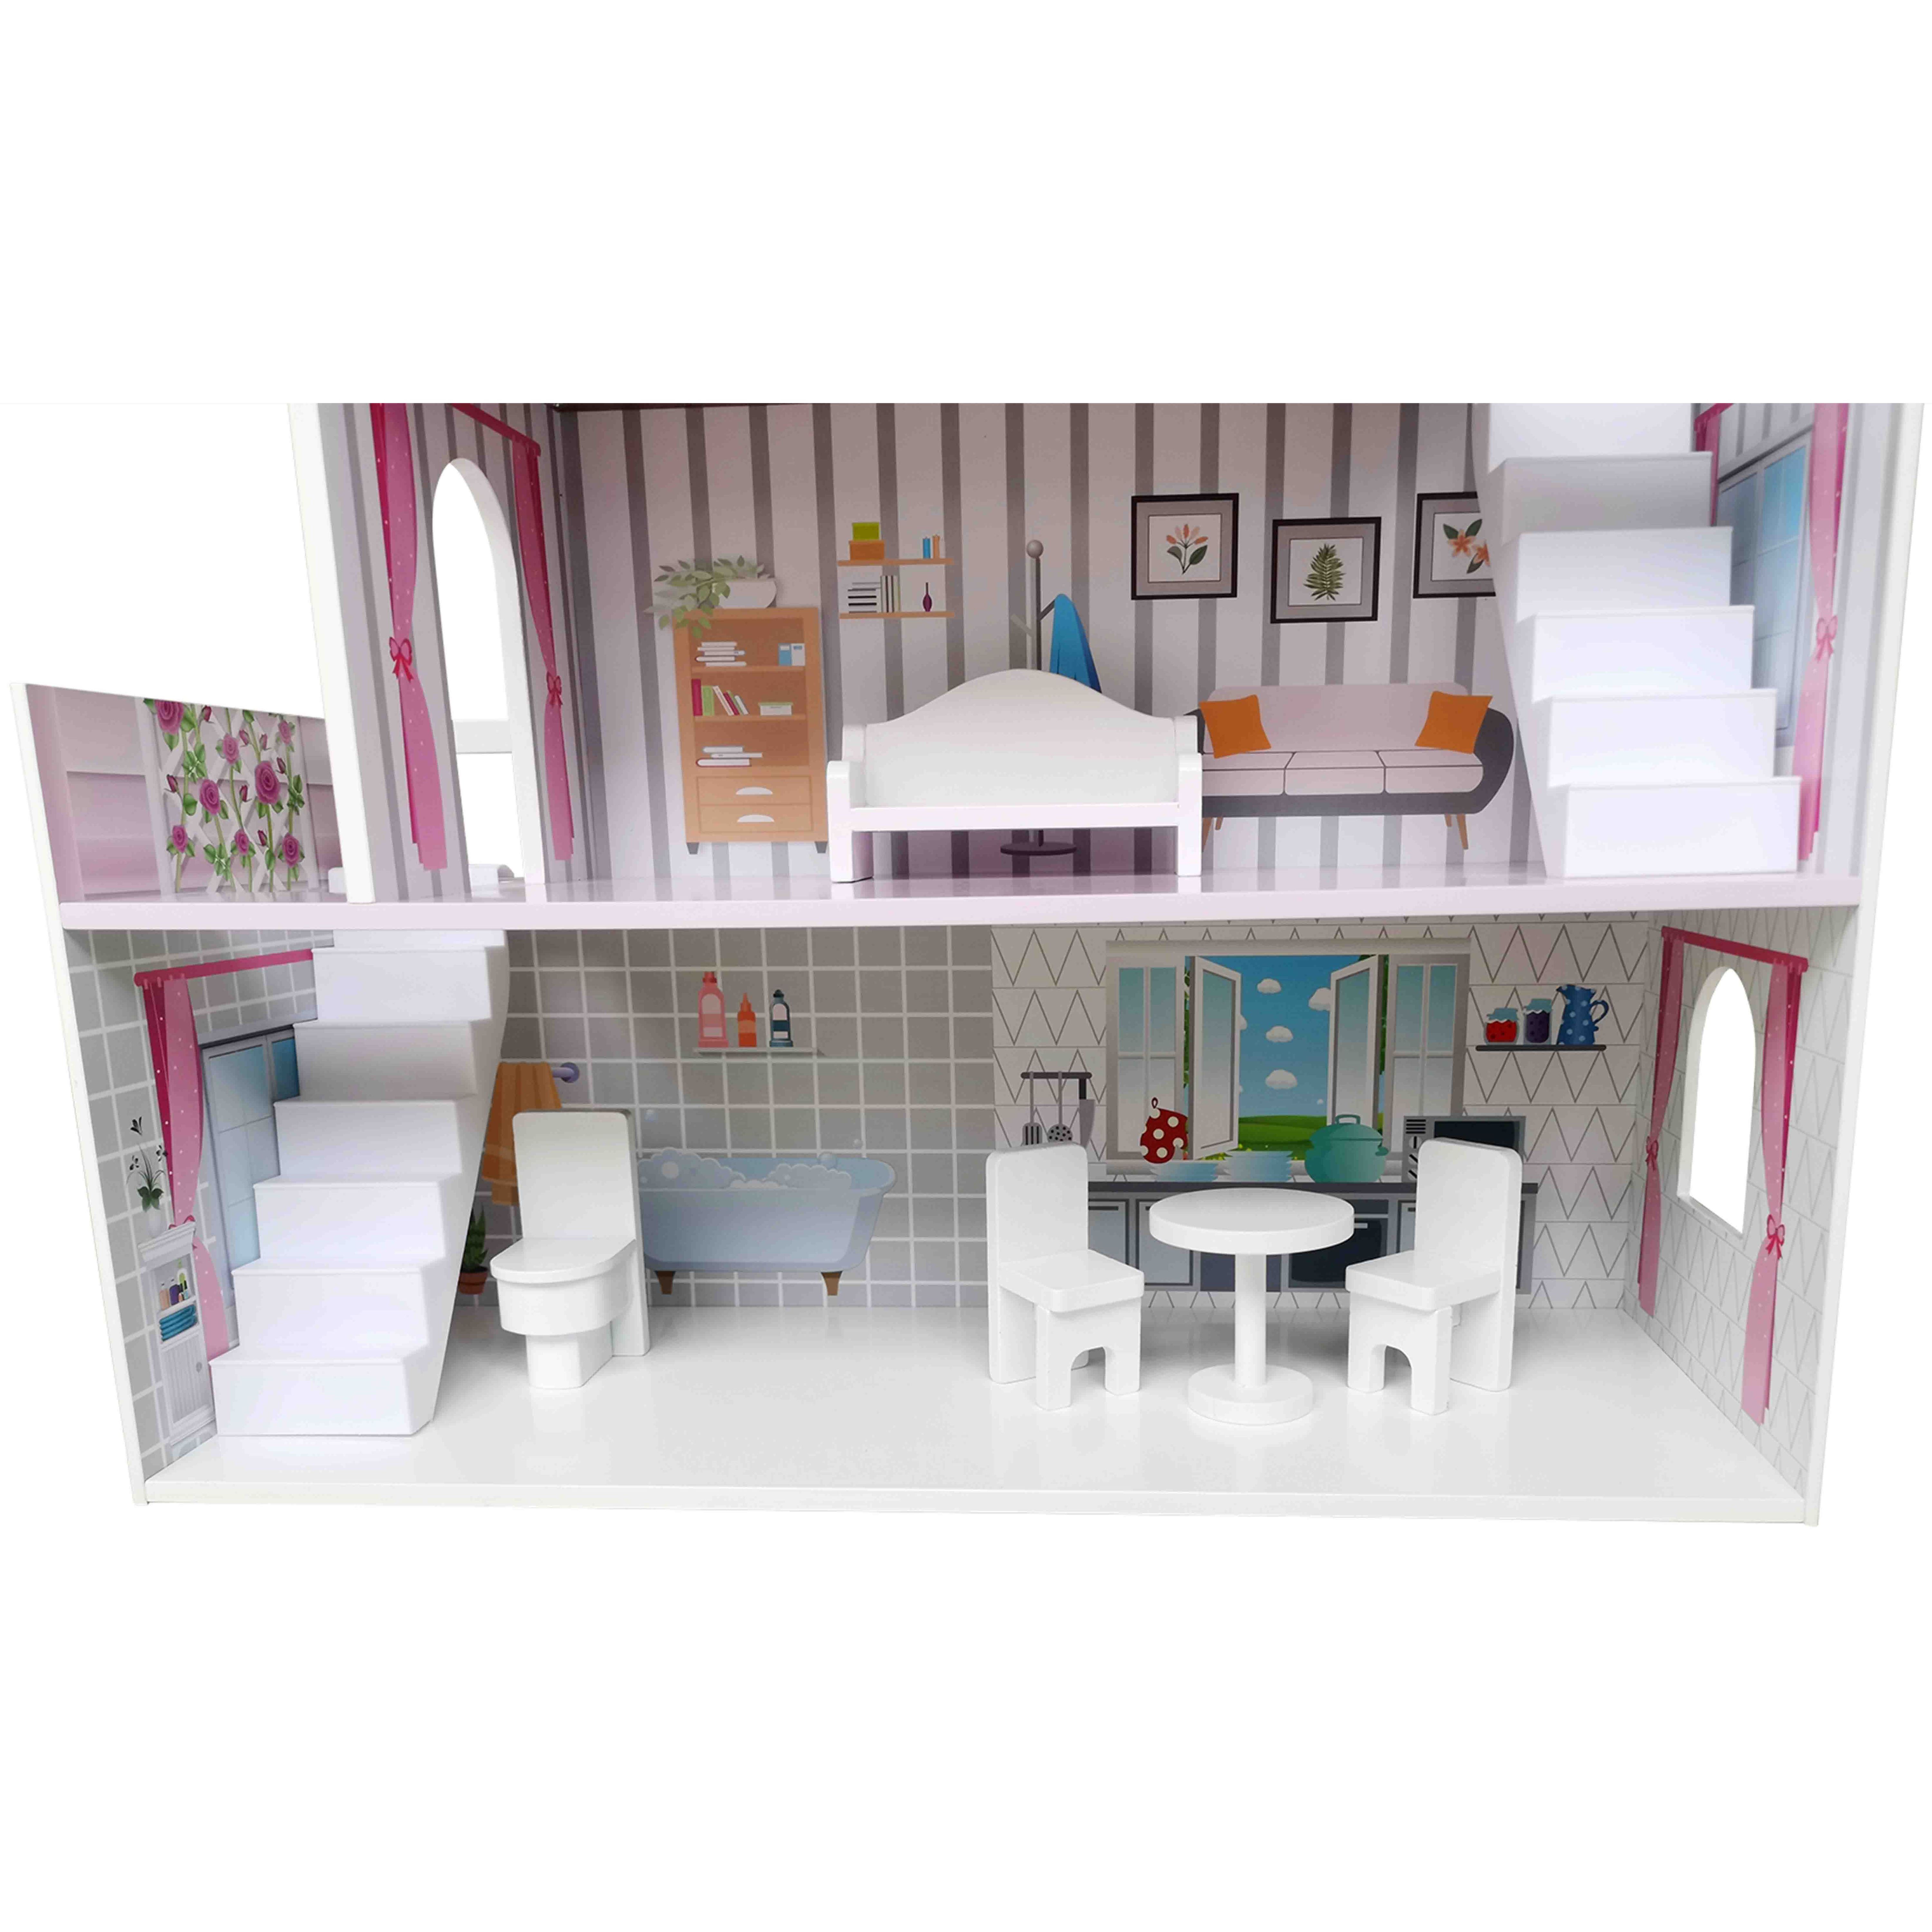 Іграшковий будиночок дерев'яний FreeON рожевий (47290) - фото 11